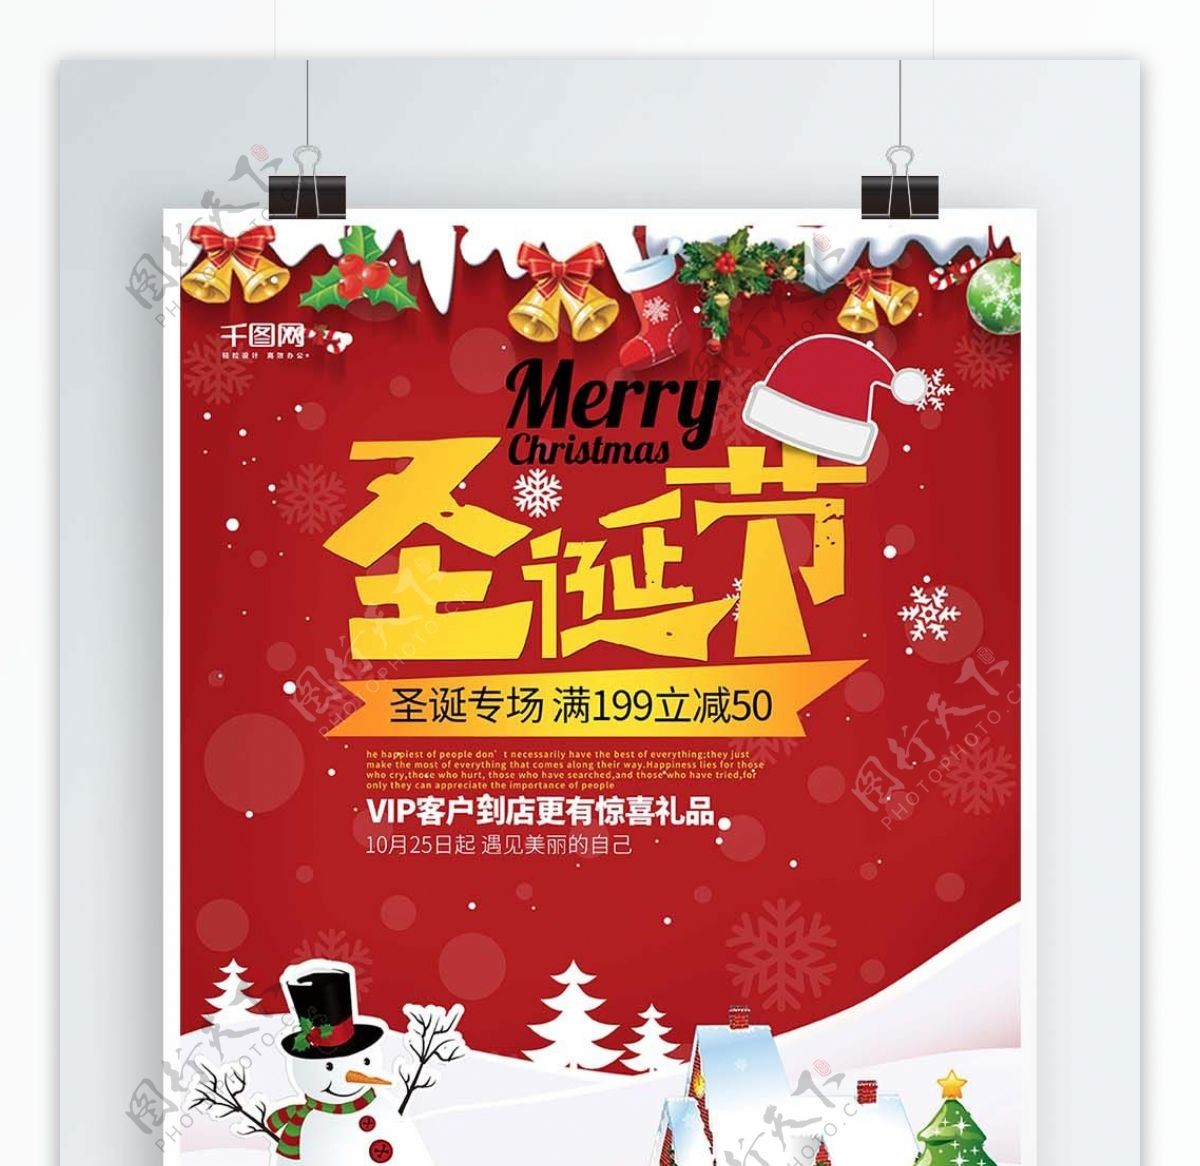 圣诞专场红白色简洁圣诞节商场促销海报设计